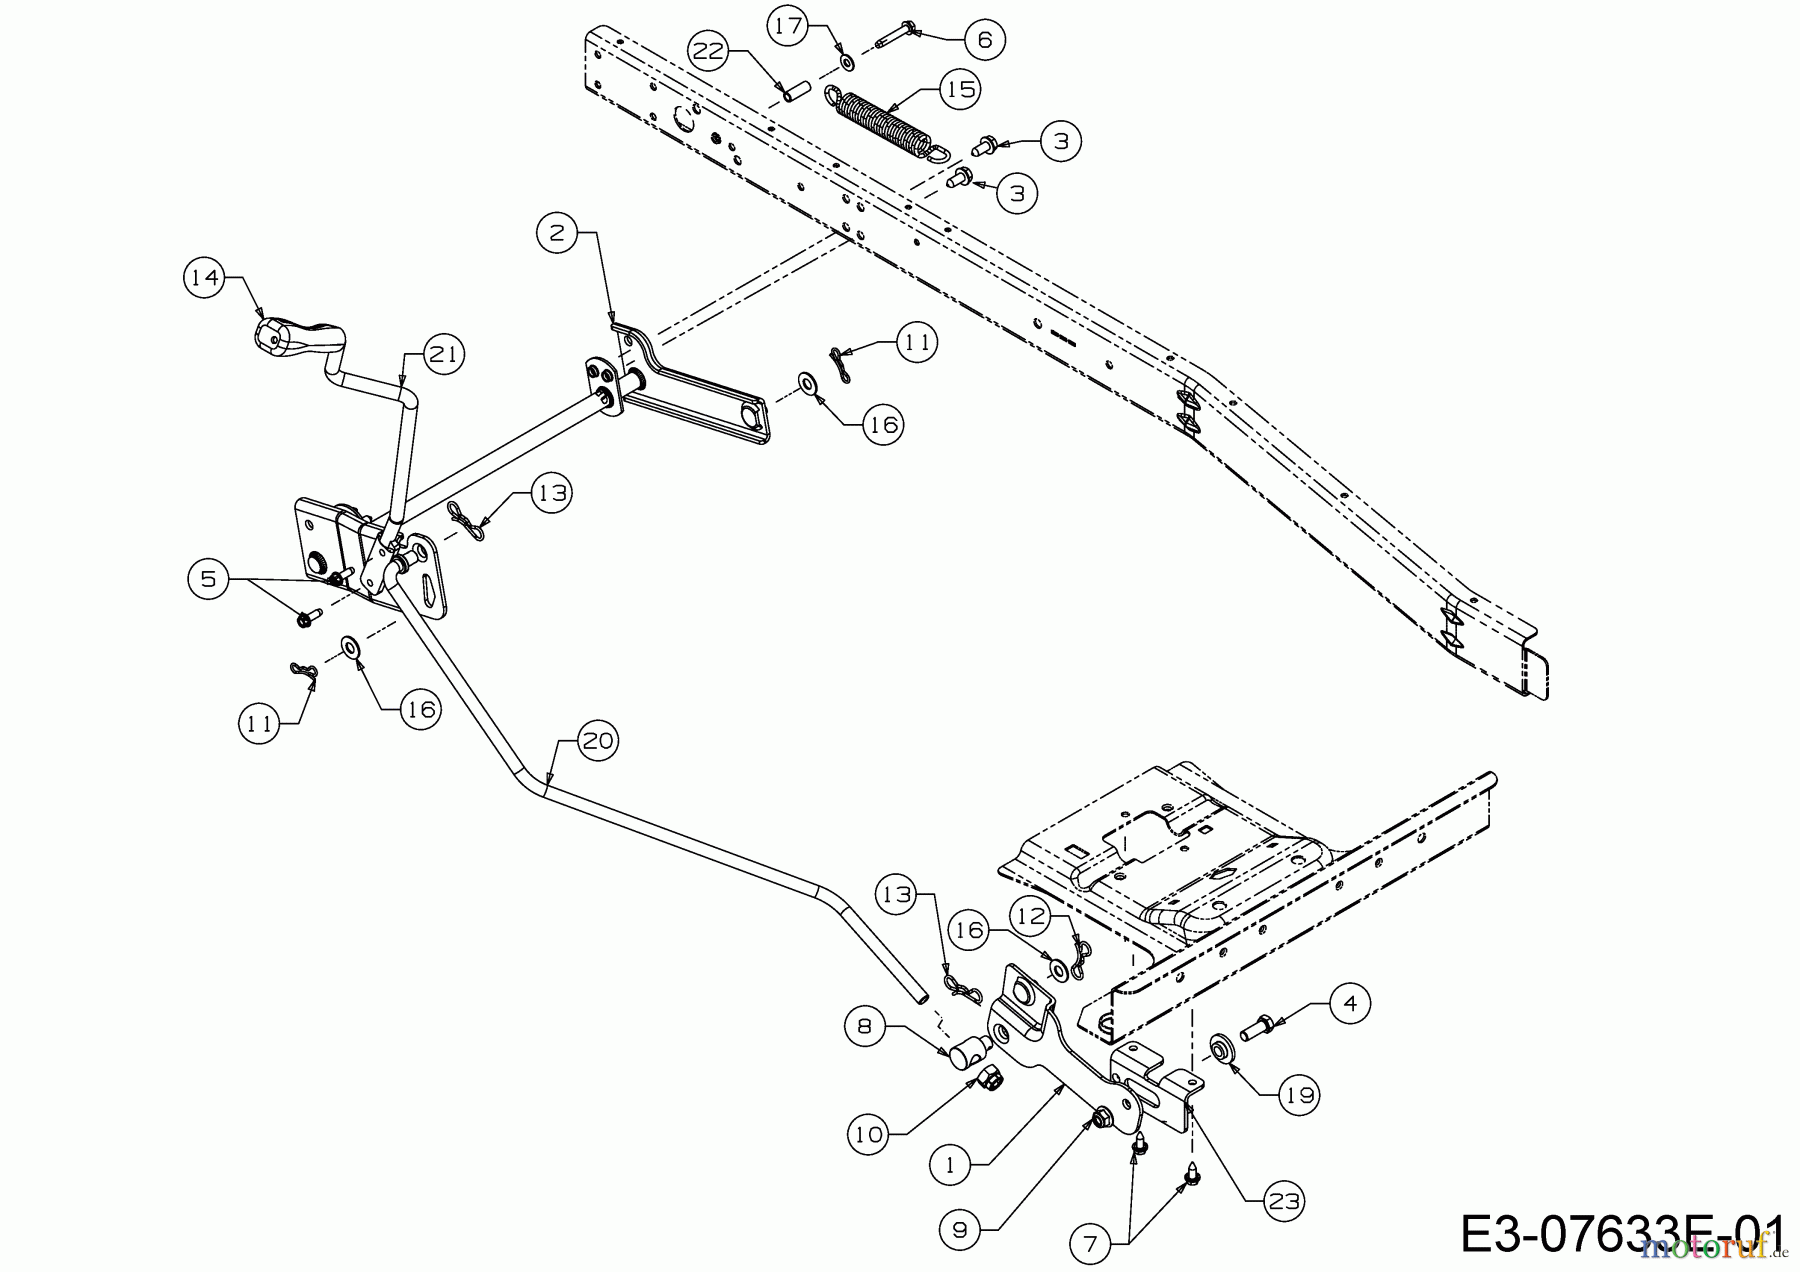  WOLF-Garten Expert Rasentraktoren Scooter Pro Hydro 13A221HD650  (2018) Mähwerksaushebung